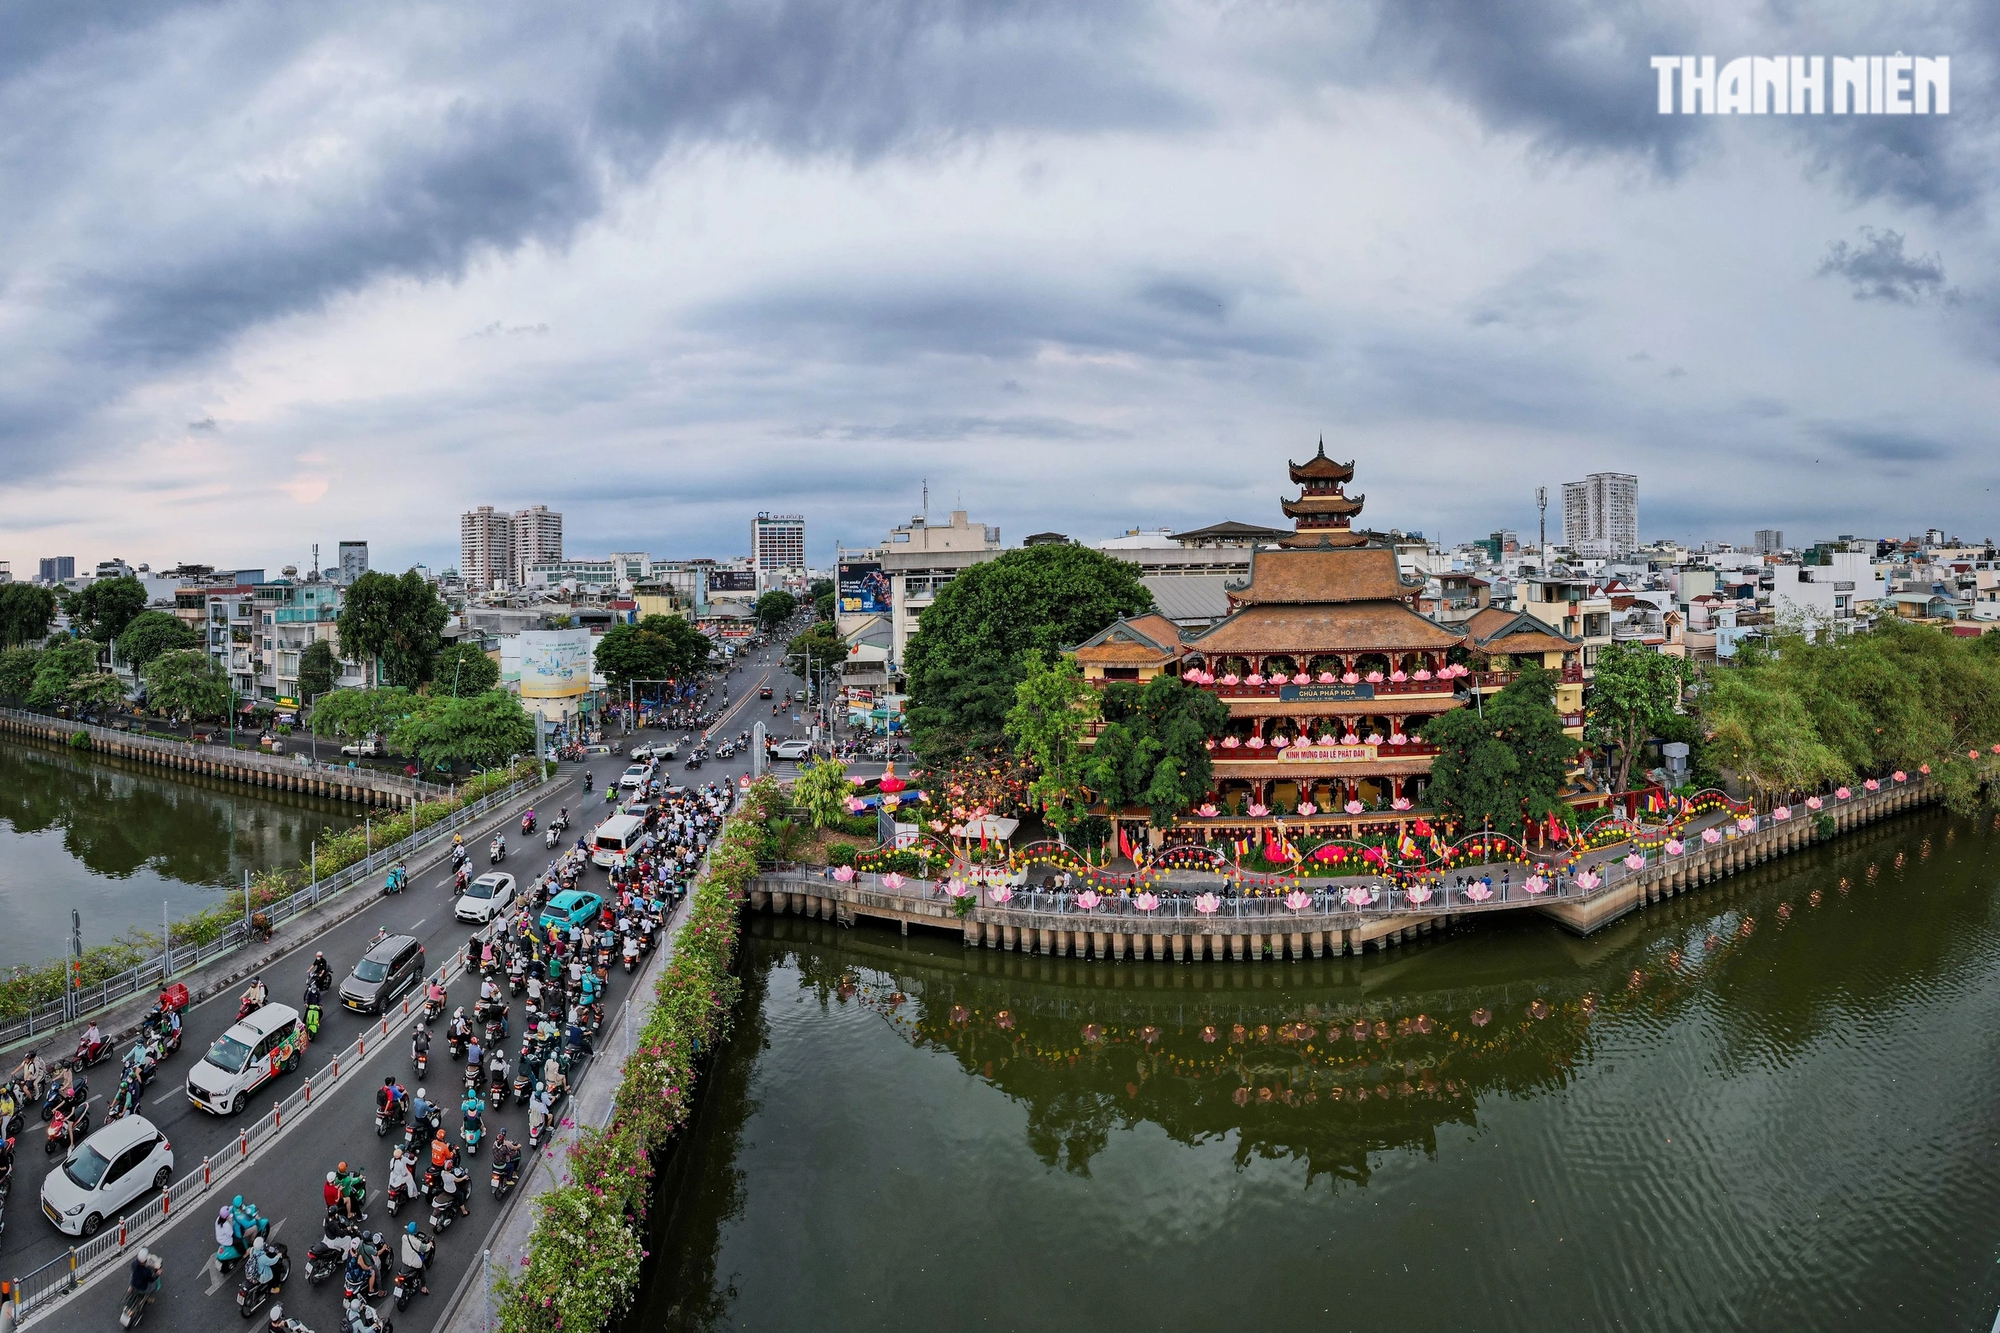 Nằm cạnh dòng kênh Nhiêu Lộc, chùa Pháp Hoa hằng năm đều thu hút rất đông người dân TP.HCM về đây vào ngày Phật đản để thả hoa đăng vào đêm 12.4 âm lịch